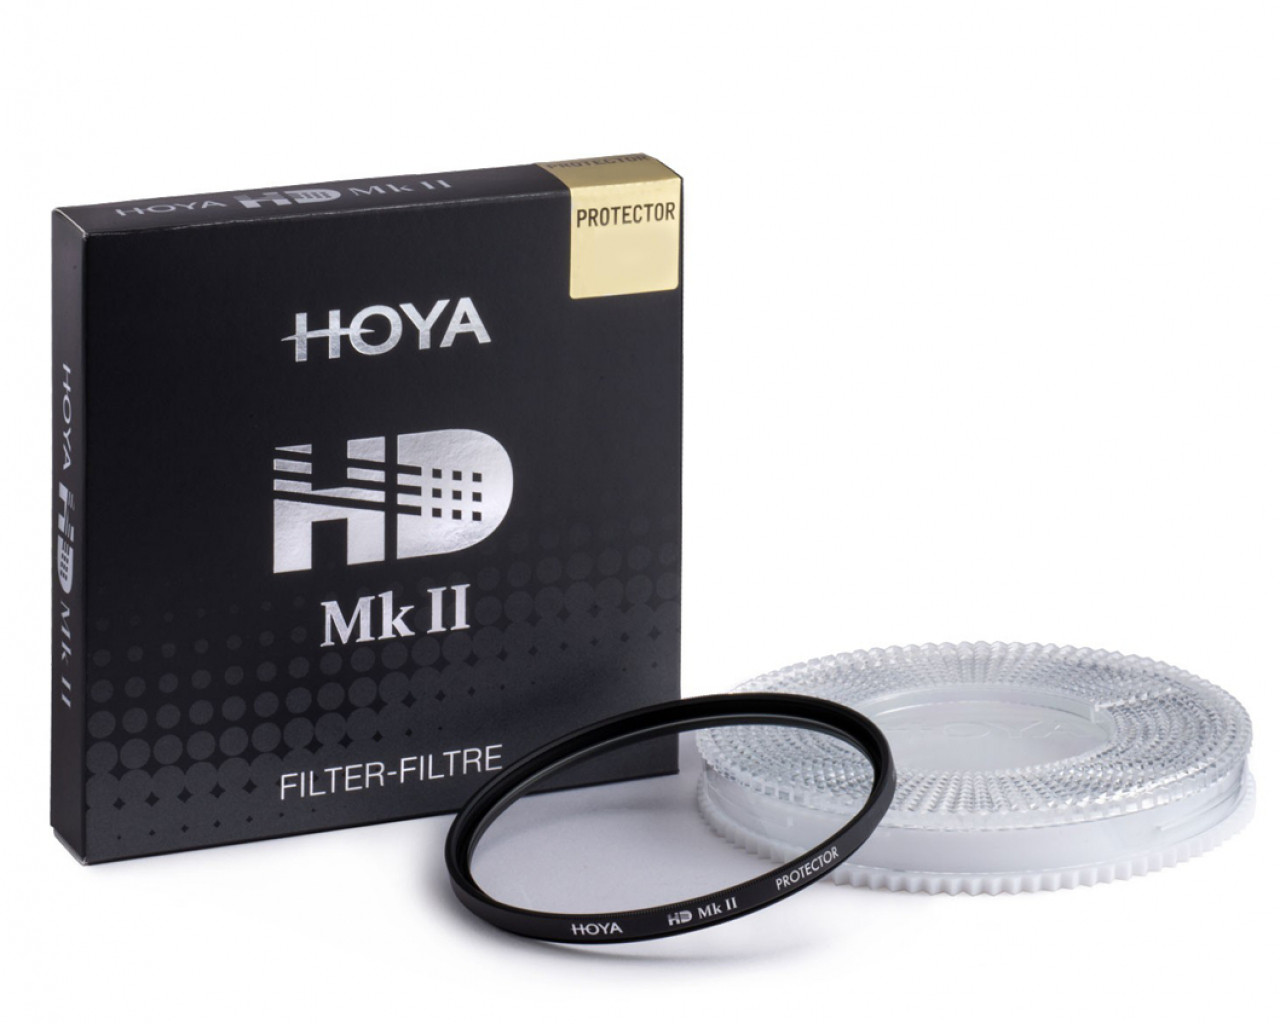 Hoya Filtro HD mkII Protector 49mm